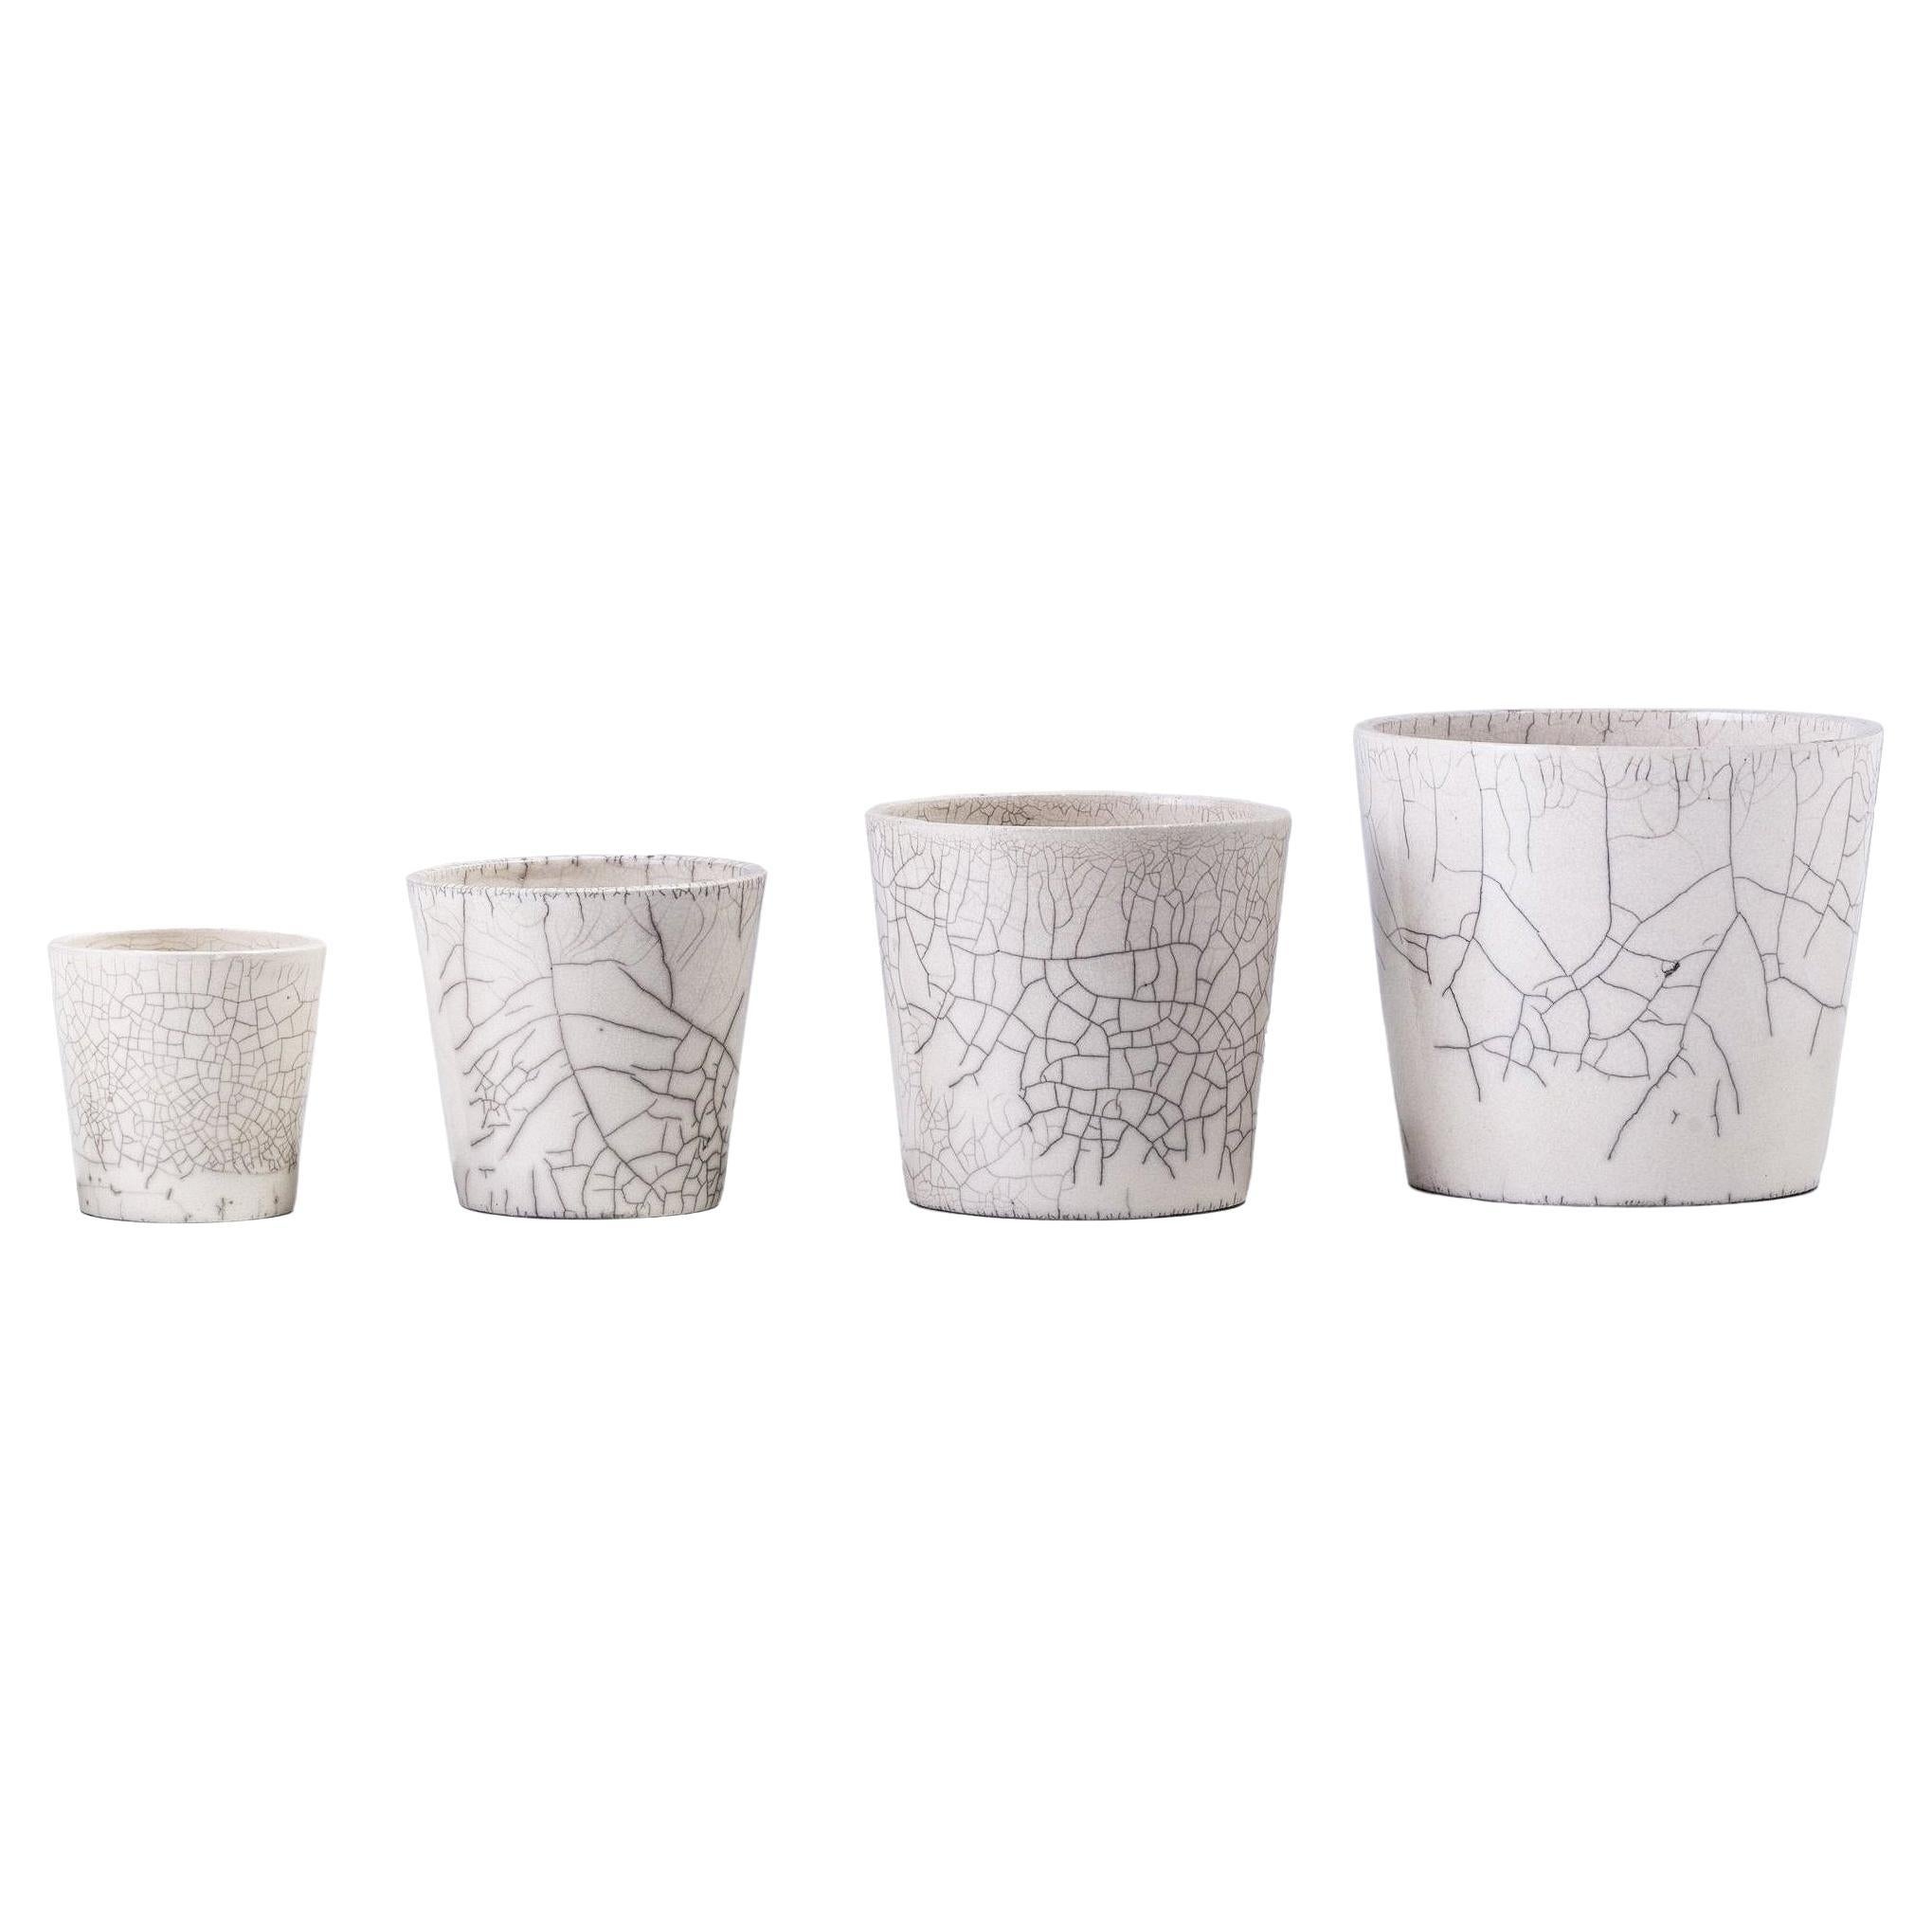 Ensemble japonais minimaliste Laab Mangkuk de 4 bols en céramique de raku blanc craquelé